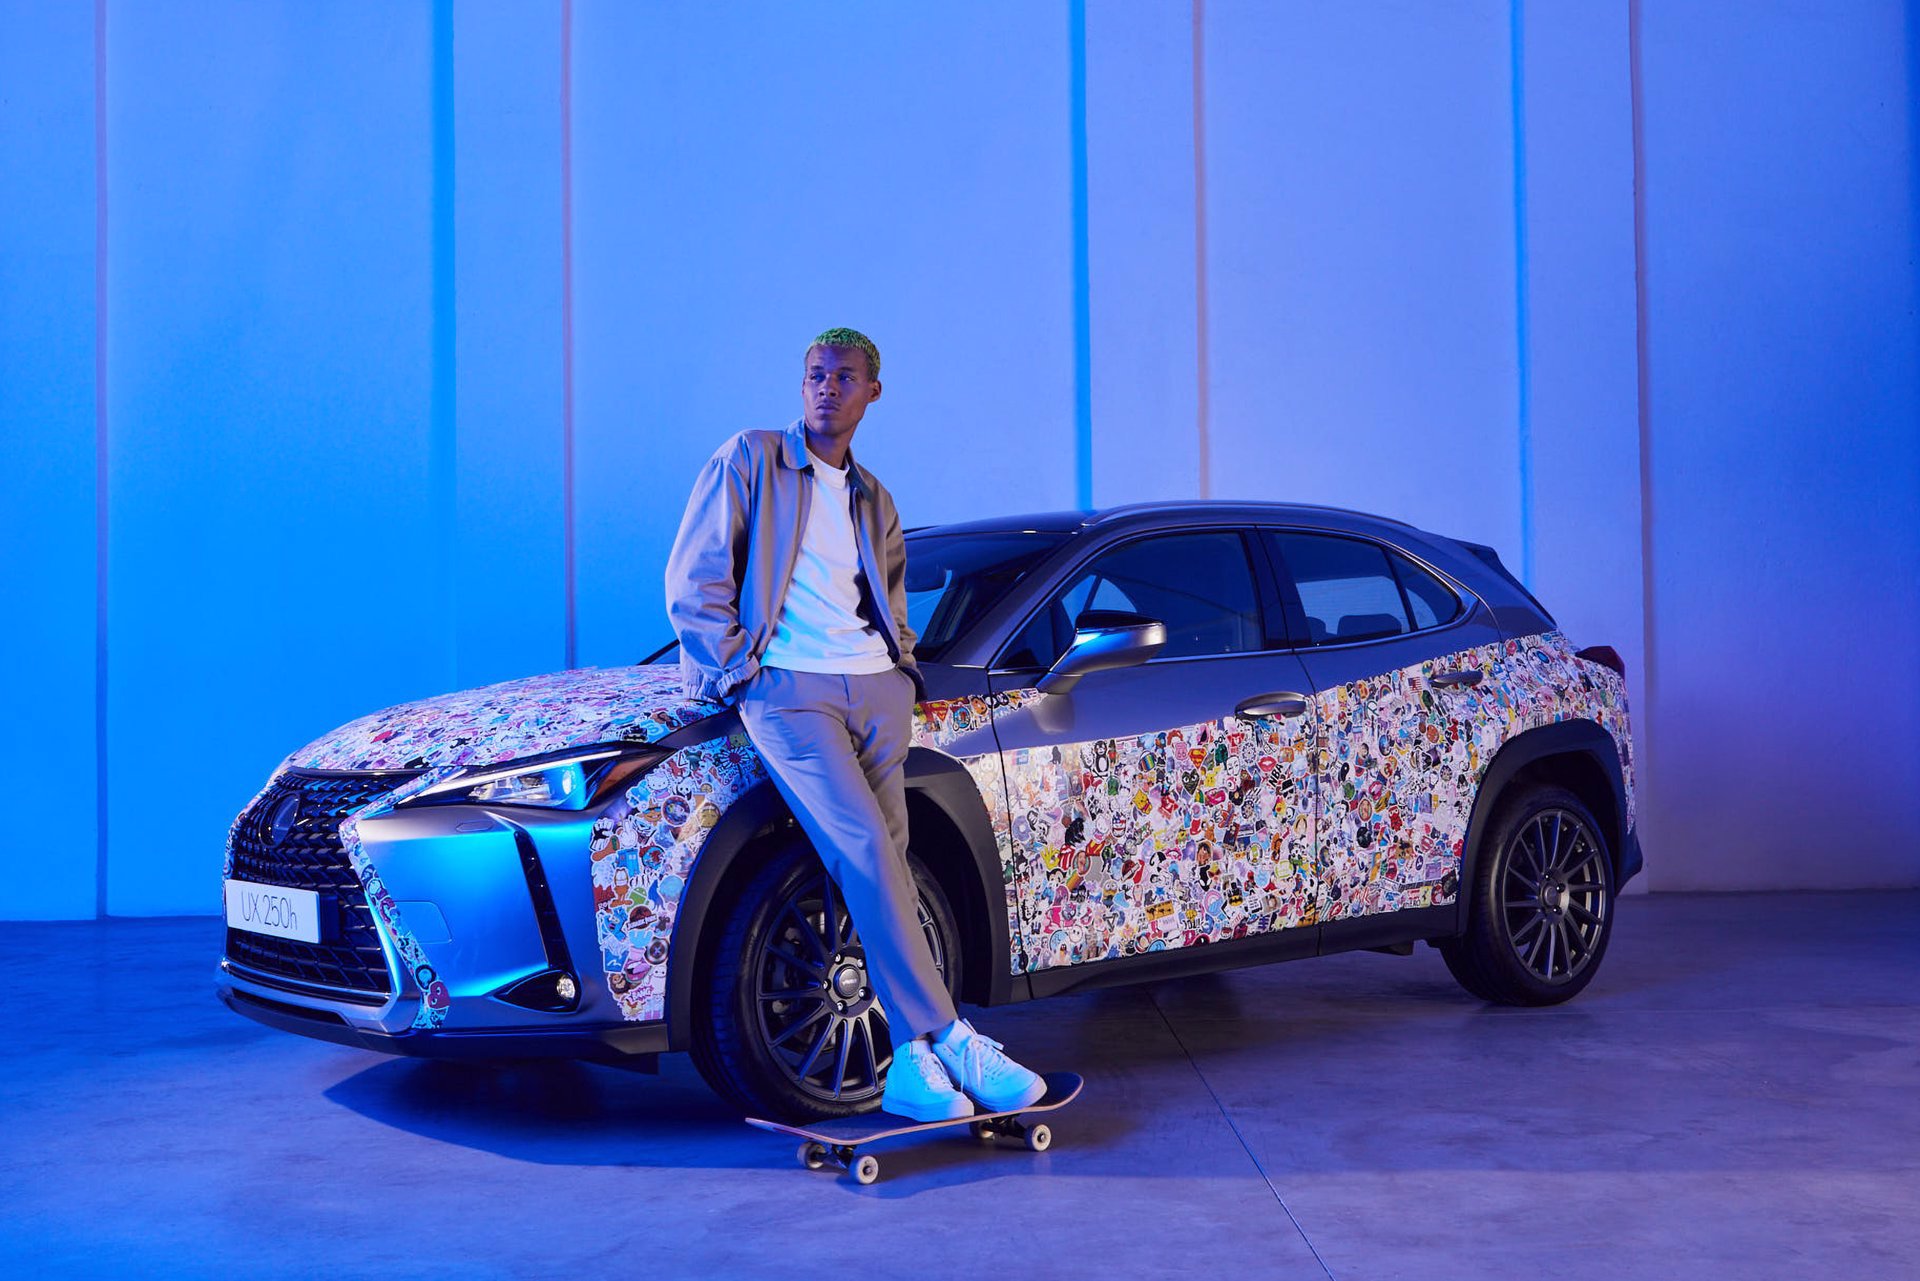 El nuevo modelo de Lexus, inspirado en el arte callejero